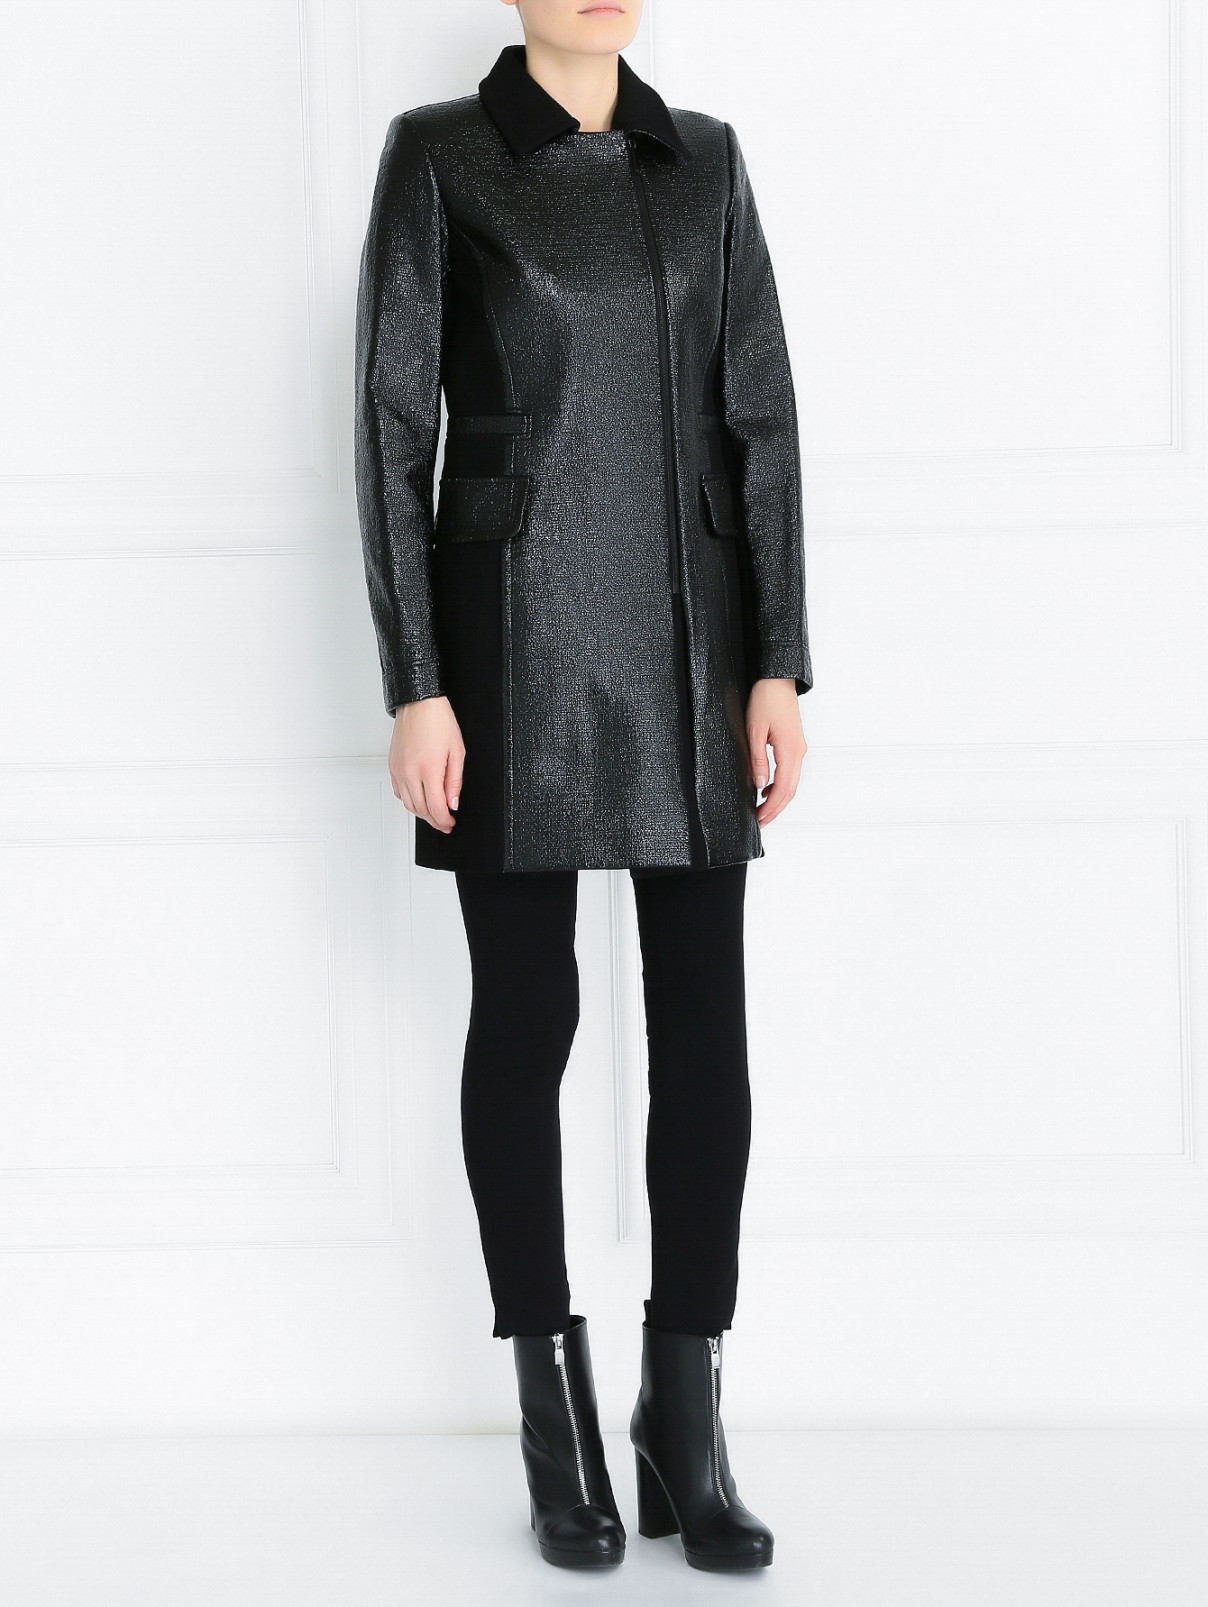 Пальто из смешанной шерсти с декоративными лаковыми вставками Barbara Bui  –  Модель Общий вид  – Цвет:  Черный